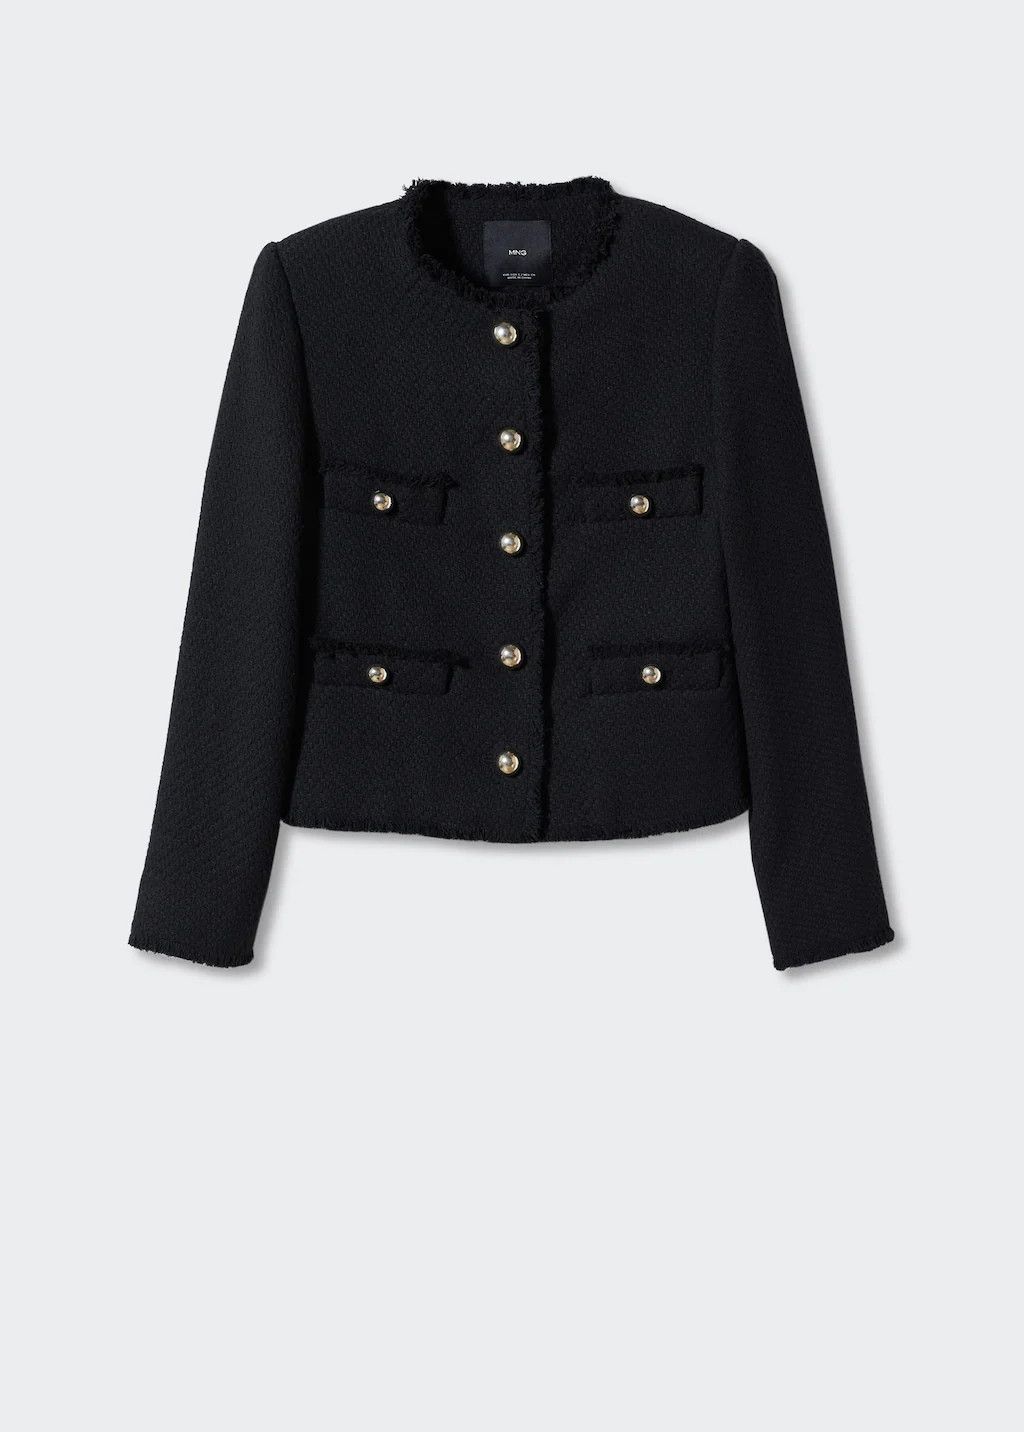 Pocket tweed jacket

Cotton-blend fabric. Tweed fabric. Straight design. Short design. Rounded neck. | MANGO (US)